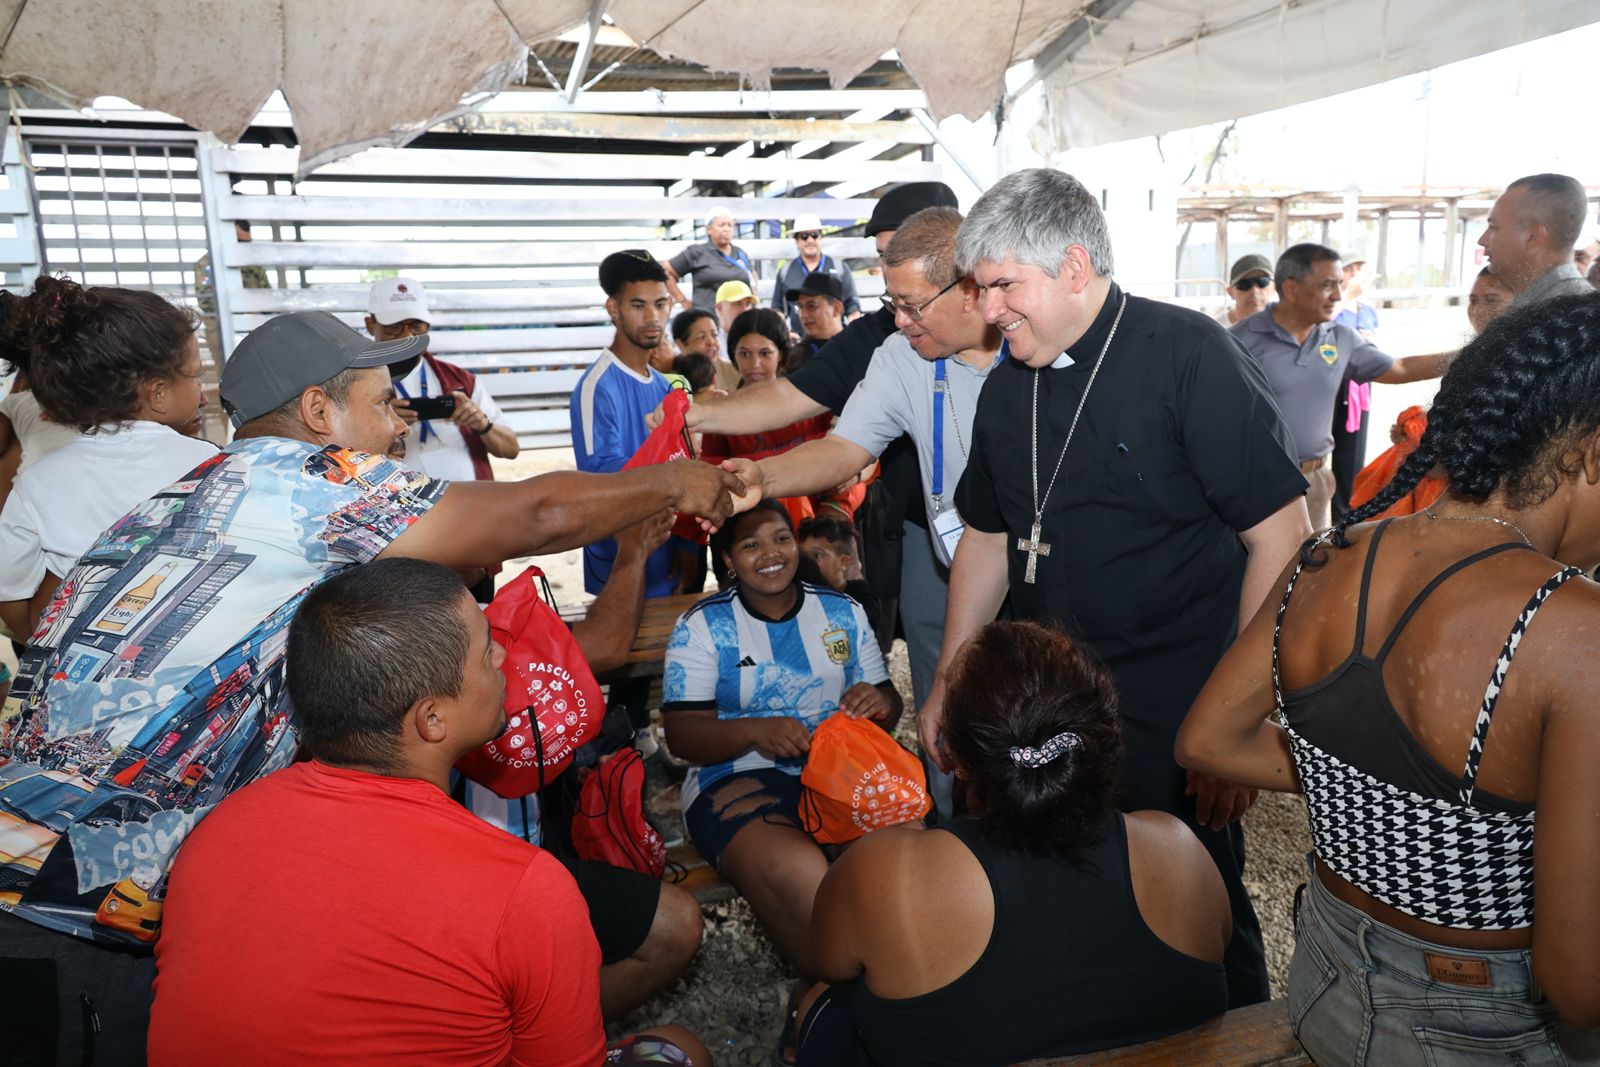 Obispos se unen en Darién al “grito continental” en favor de los migrantes